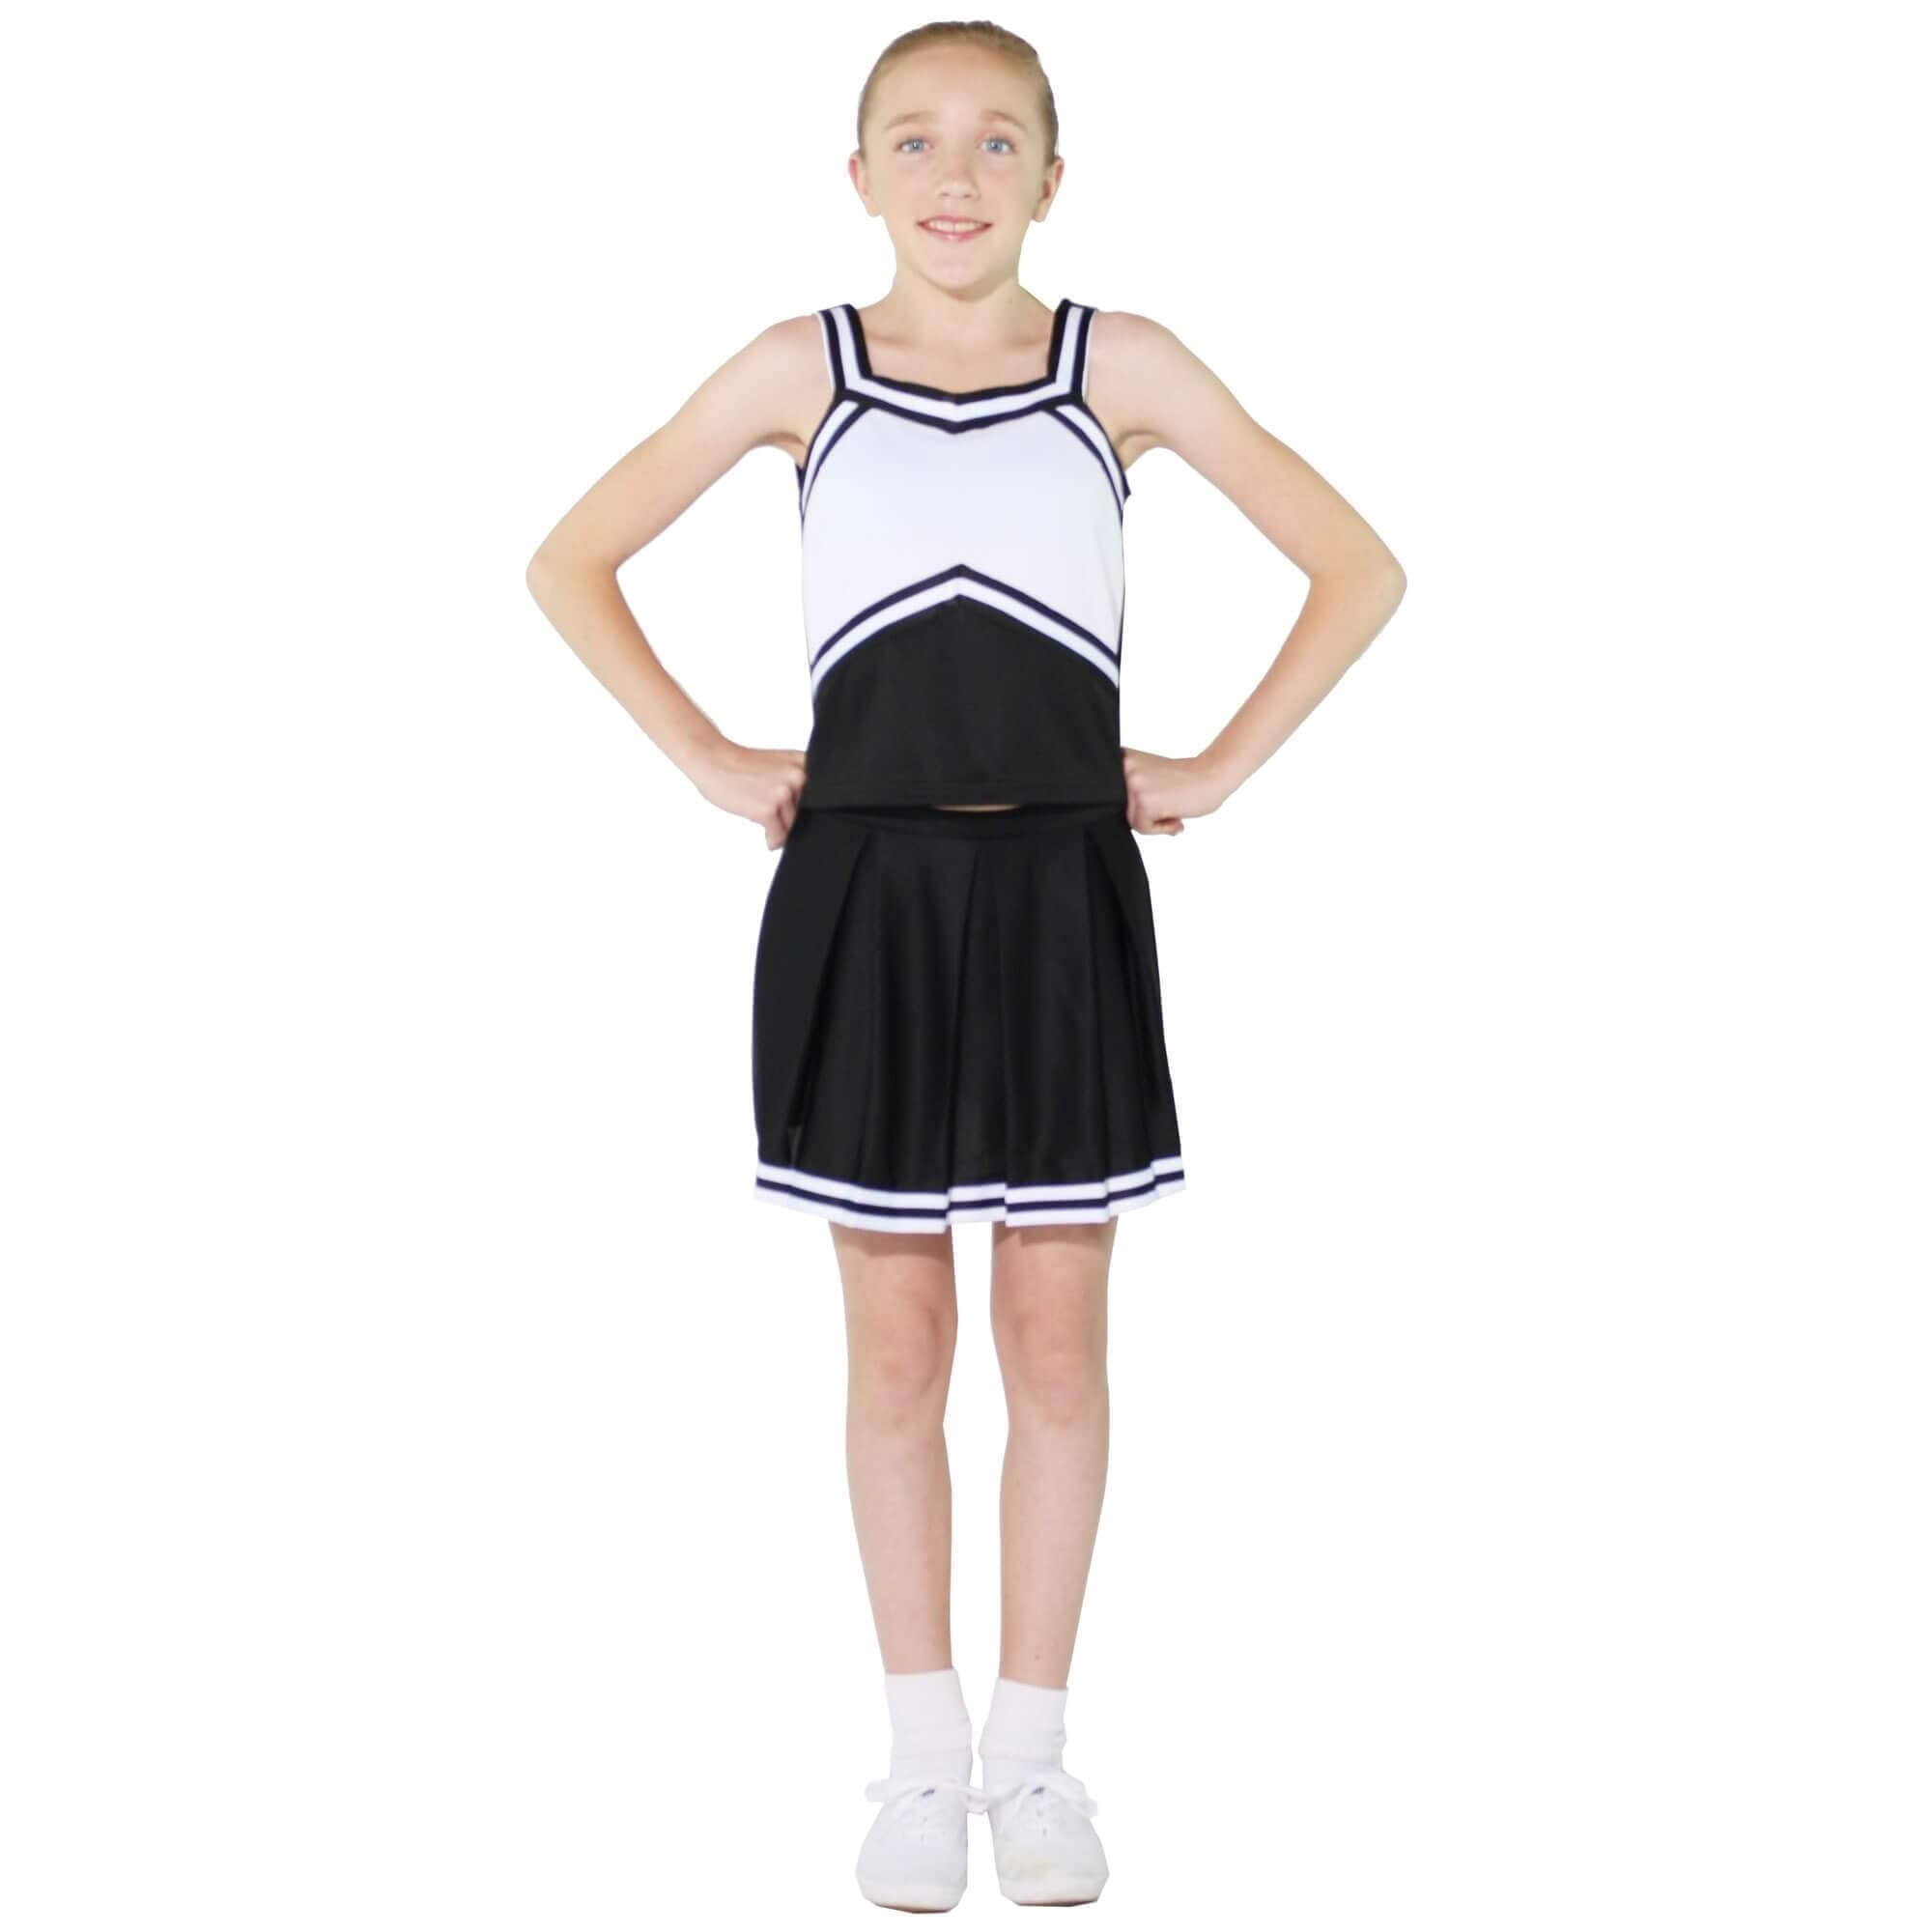 Danzcue Child Knit Pleat Cheerleading Skirt [DQCHS002C] - $17.99